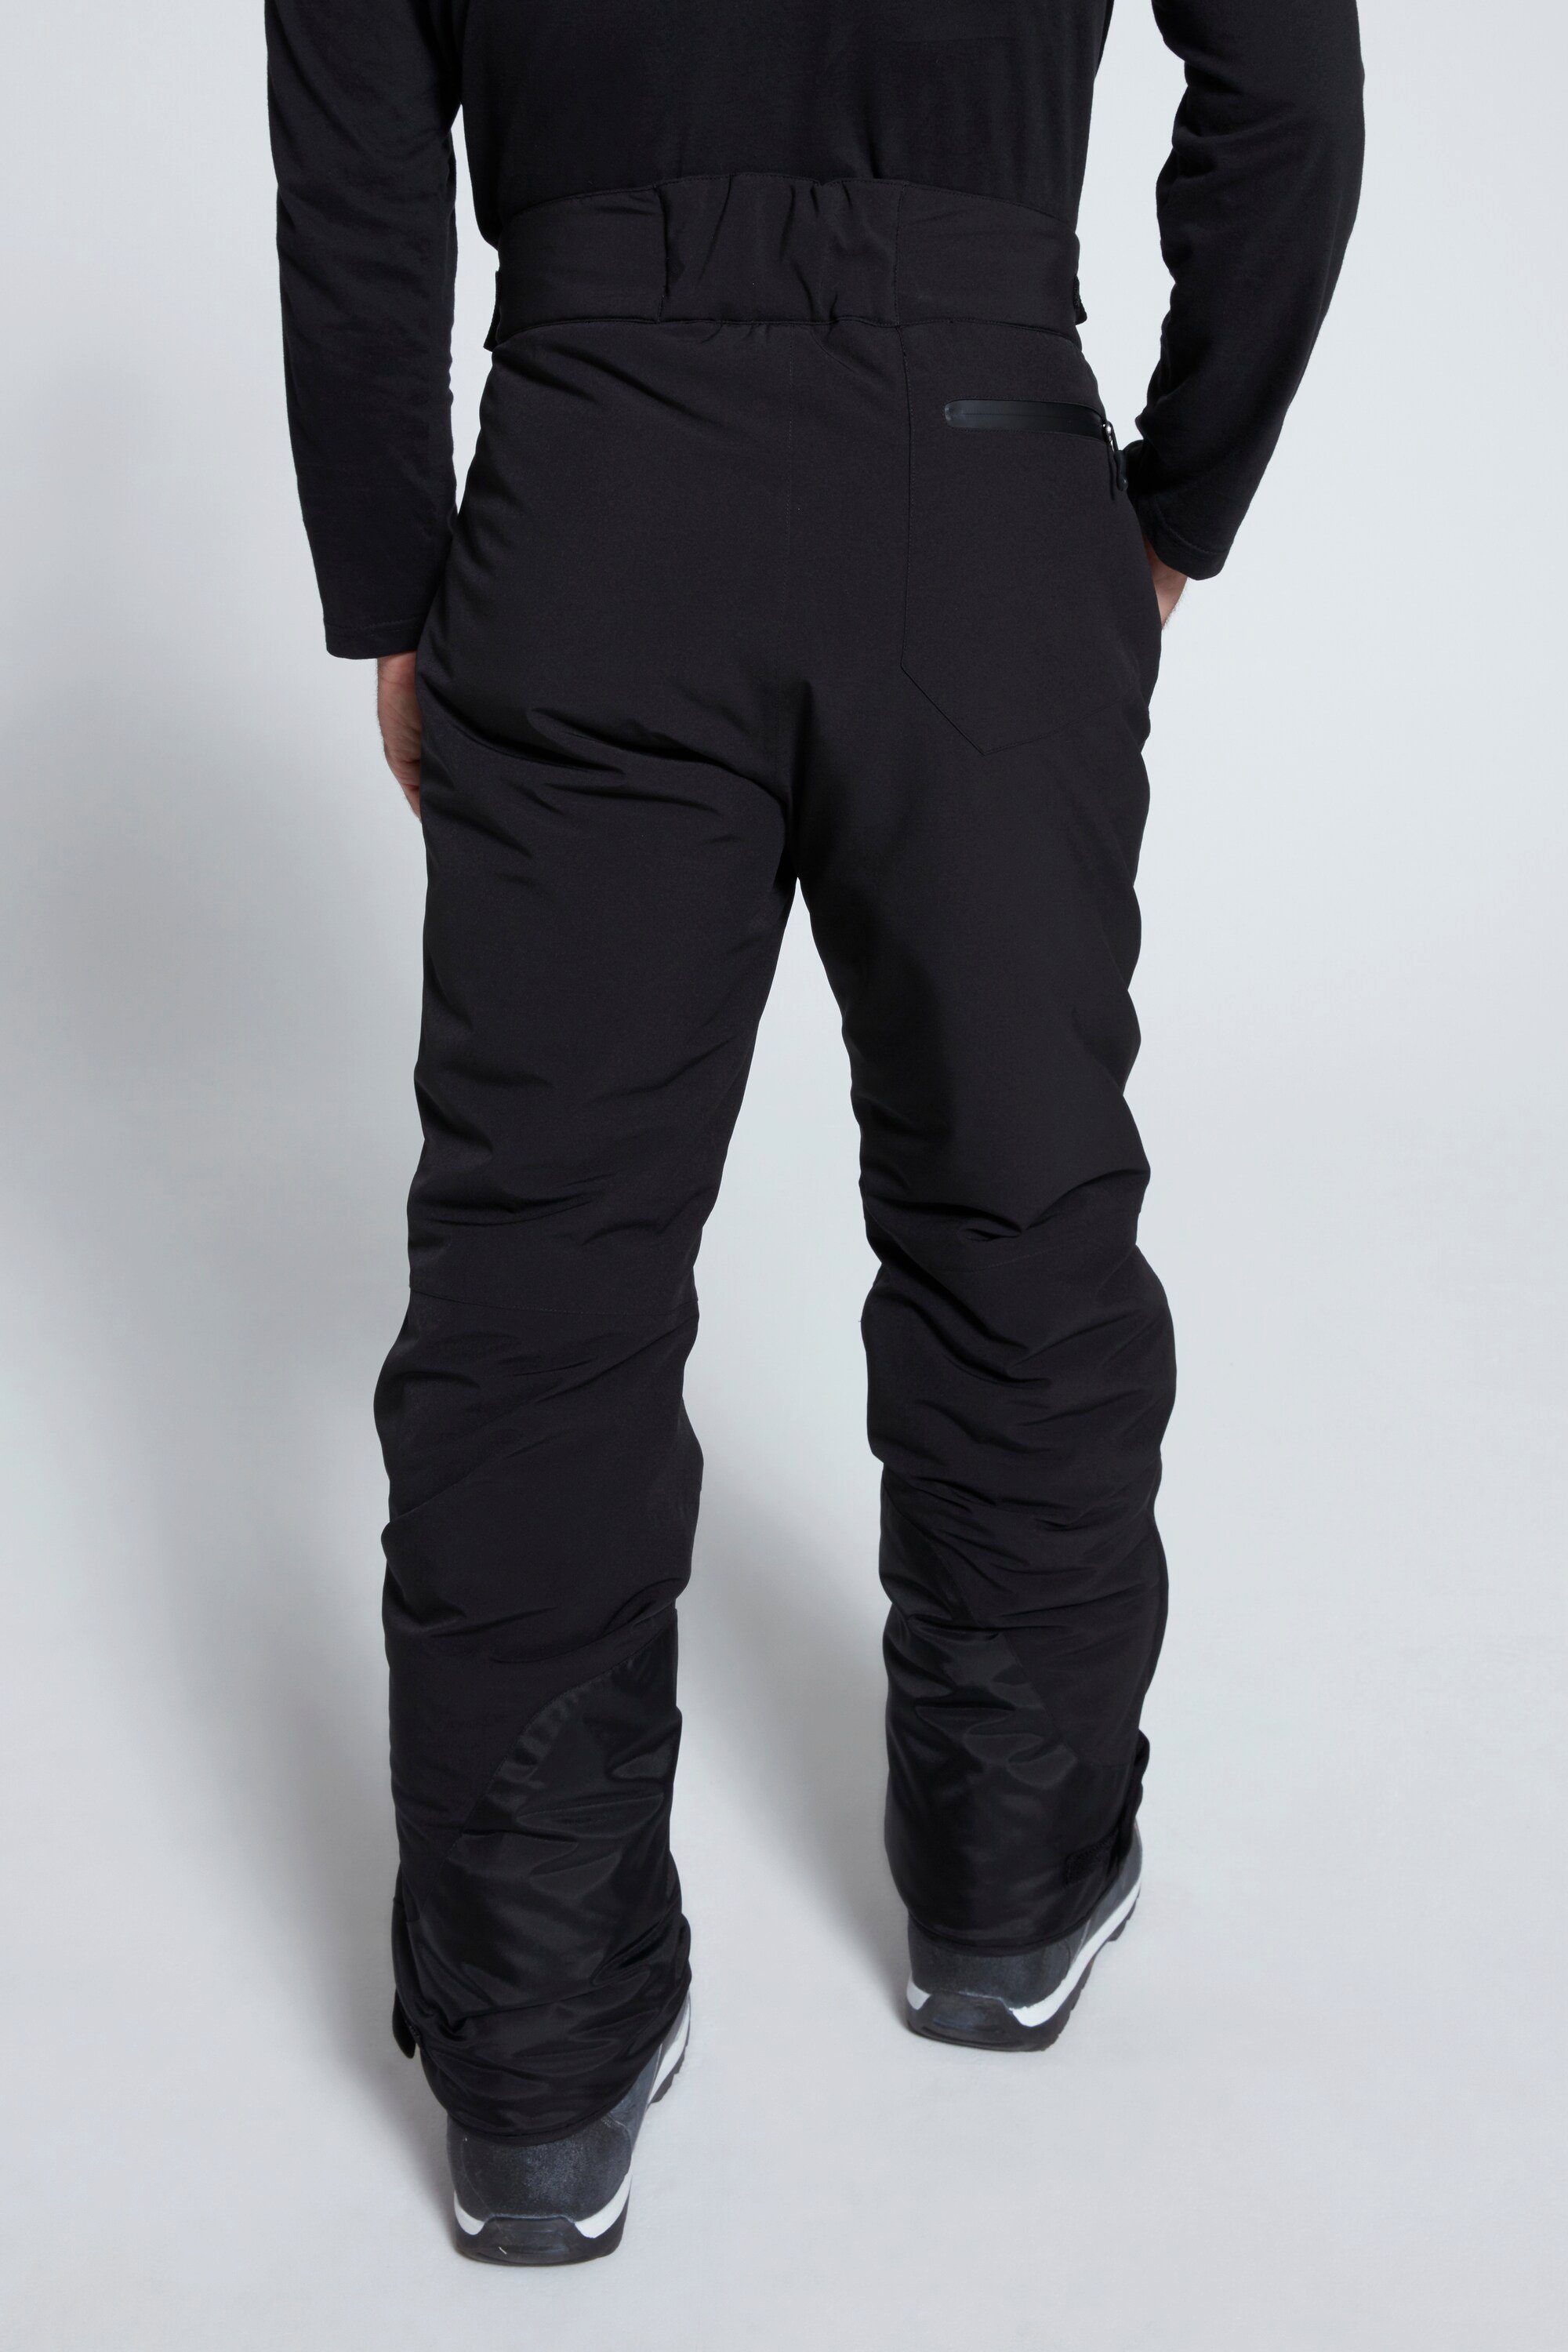 JP1880 Skihose Skihose Bauchfit schwarz Funktions-Qualität Skiwear